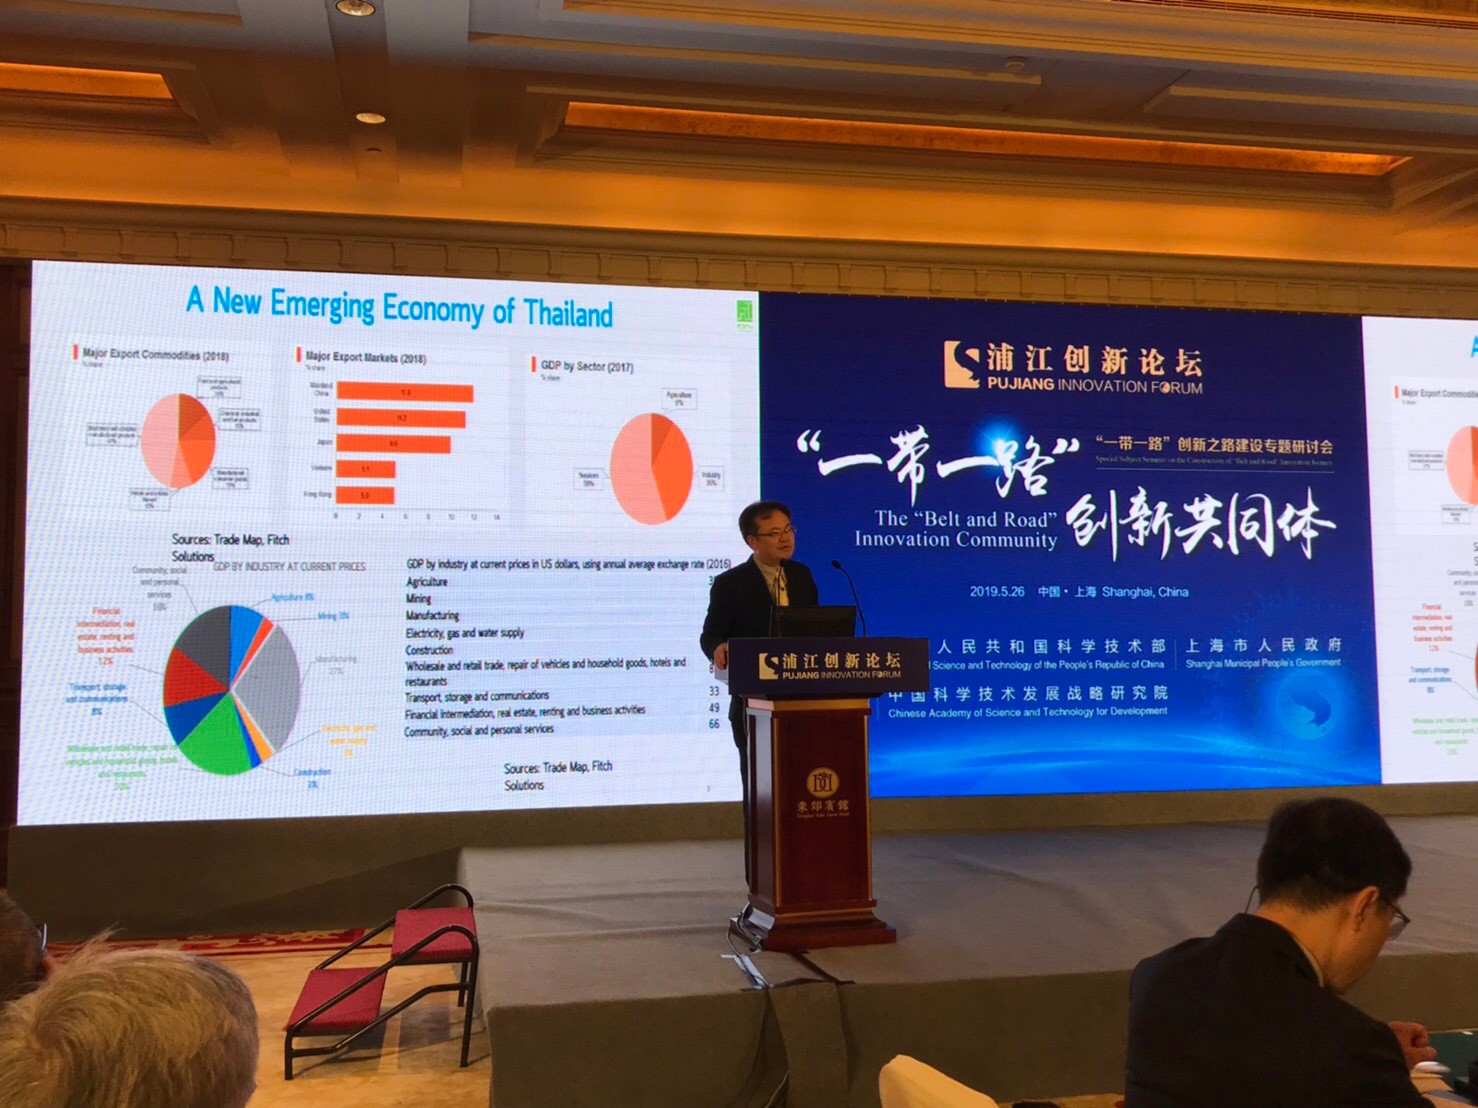 ประชุม Pujiang Innovation Forum ครั้งที่ 12 ณ นครเซี่ยงไฮ้ สาธารณรัฐประชาชนจีน